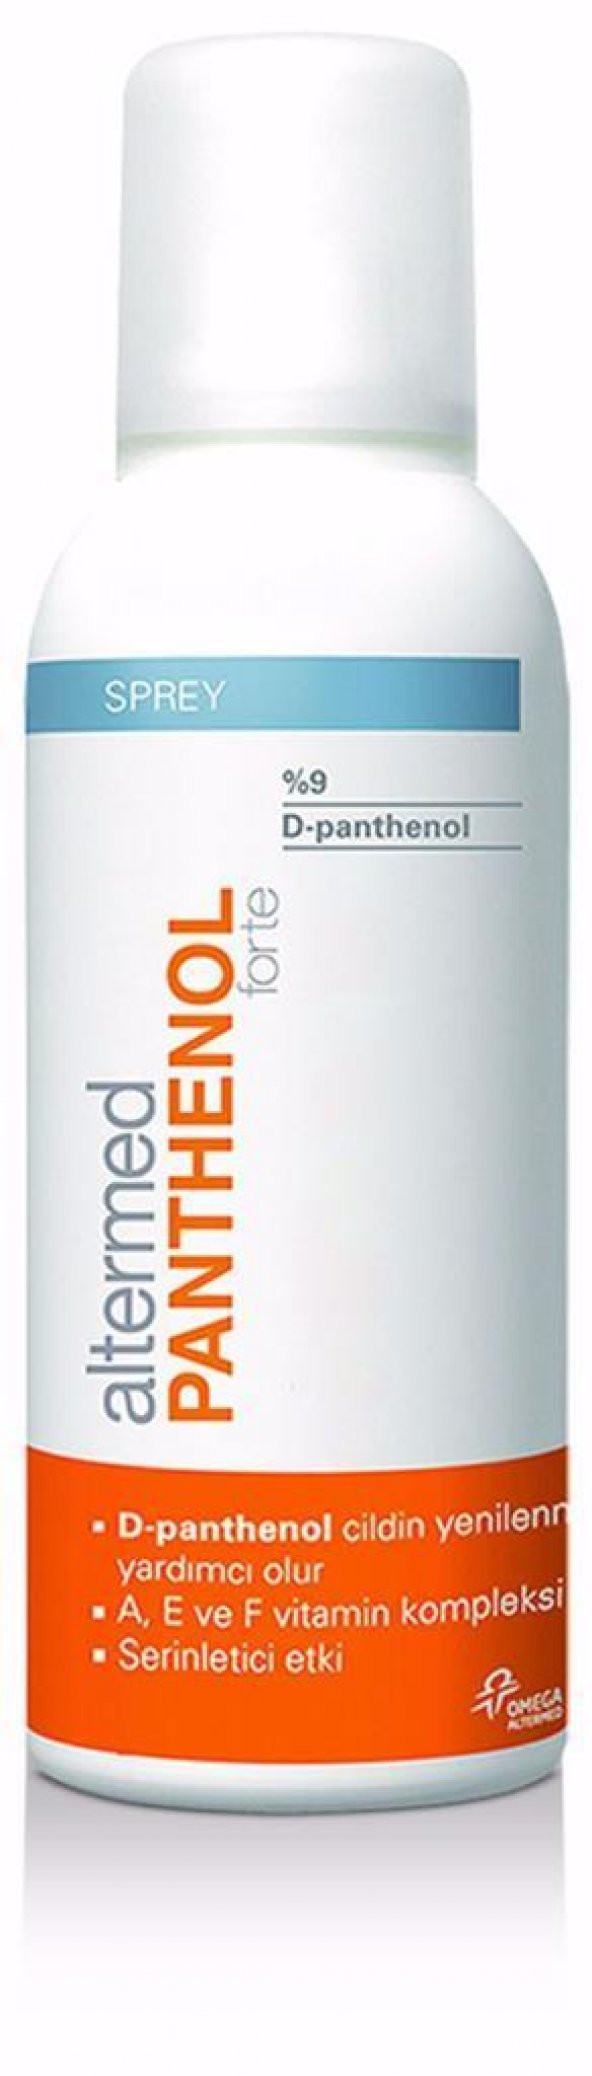 Altermed Panthenol Forte 9 Nemlendirici Sprey 150 ml